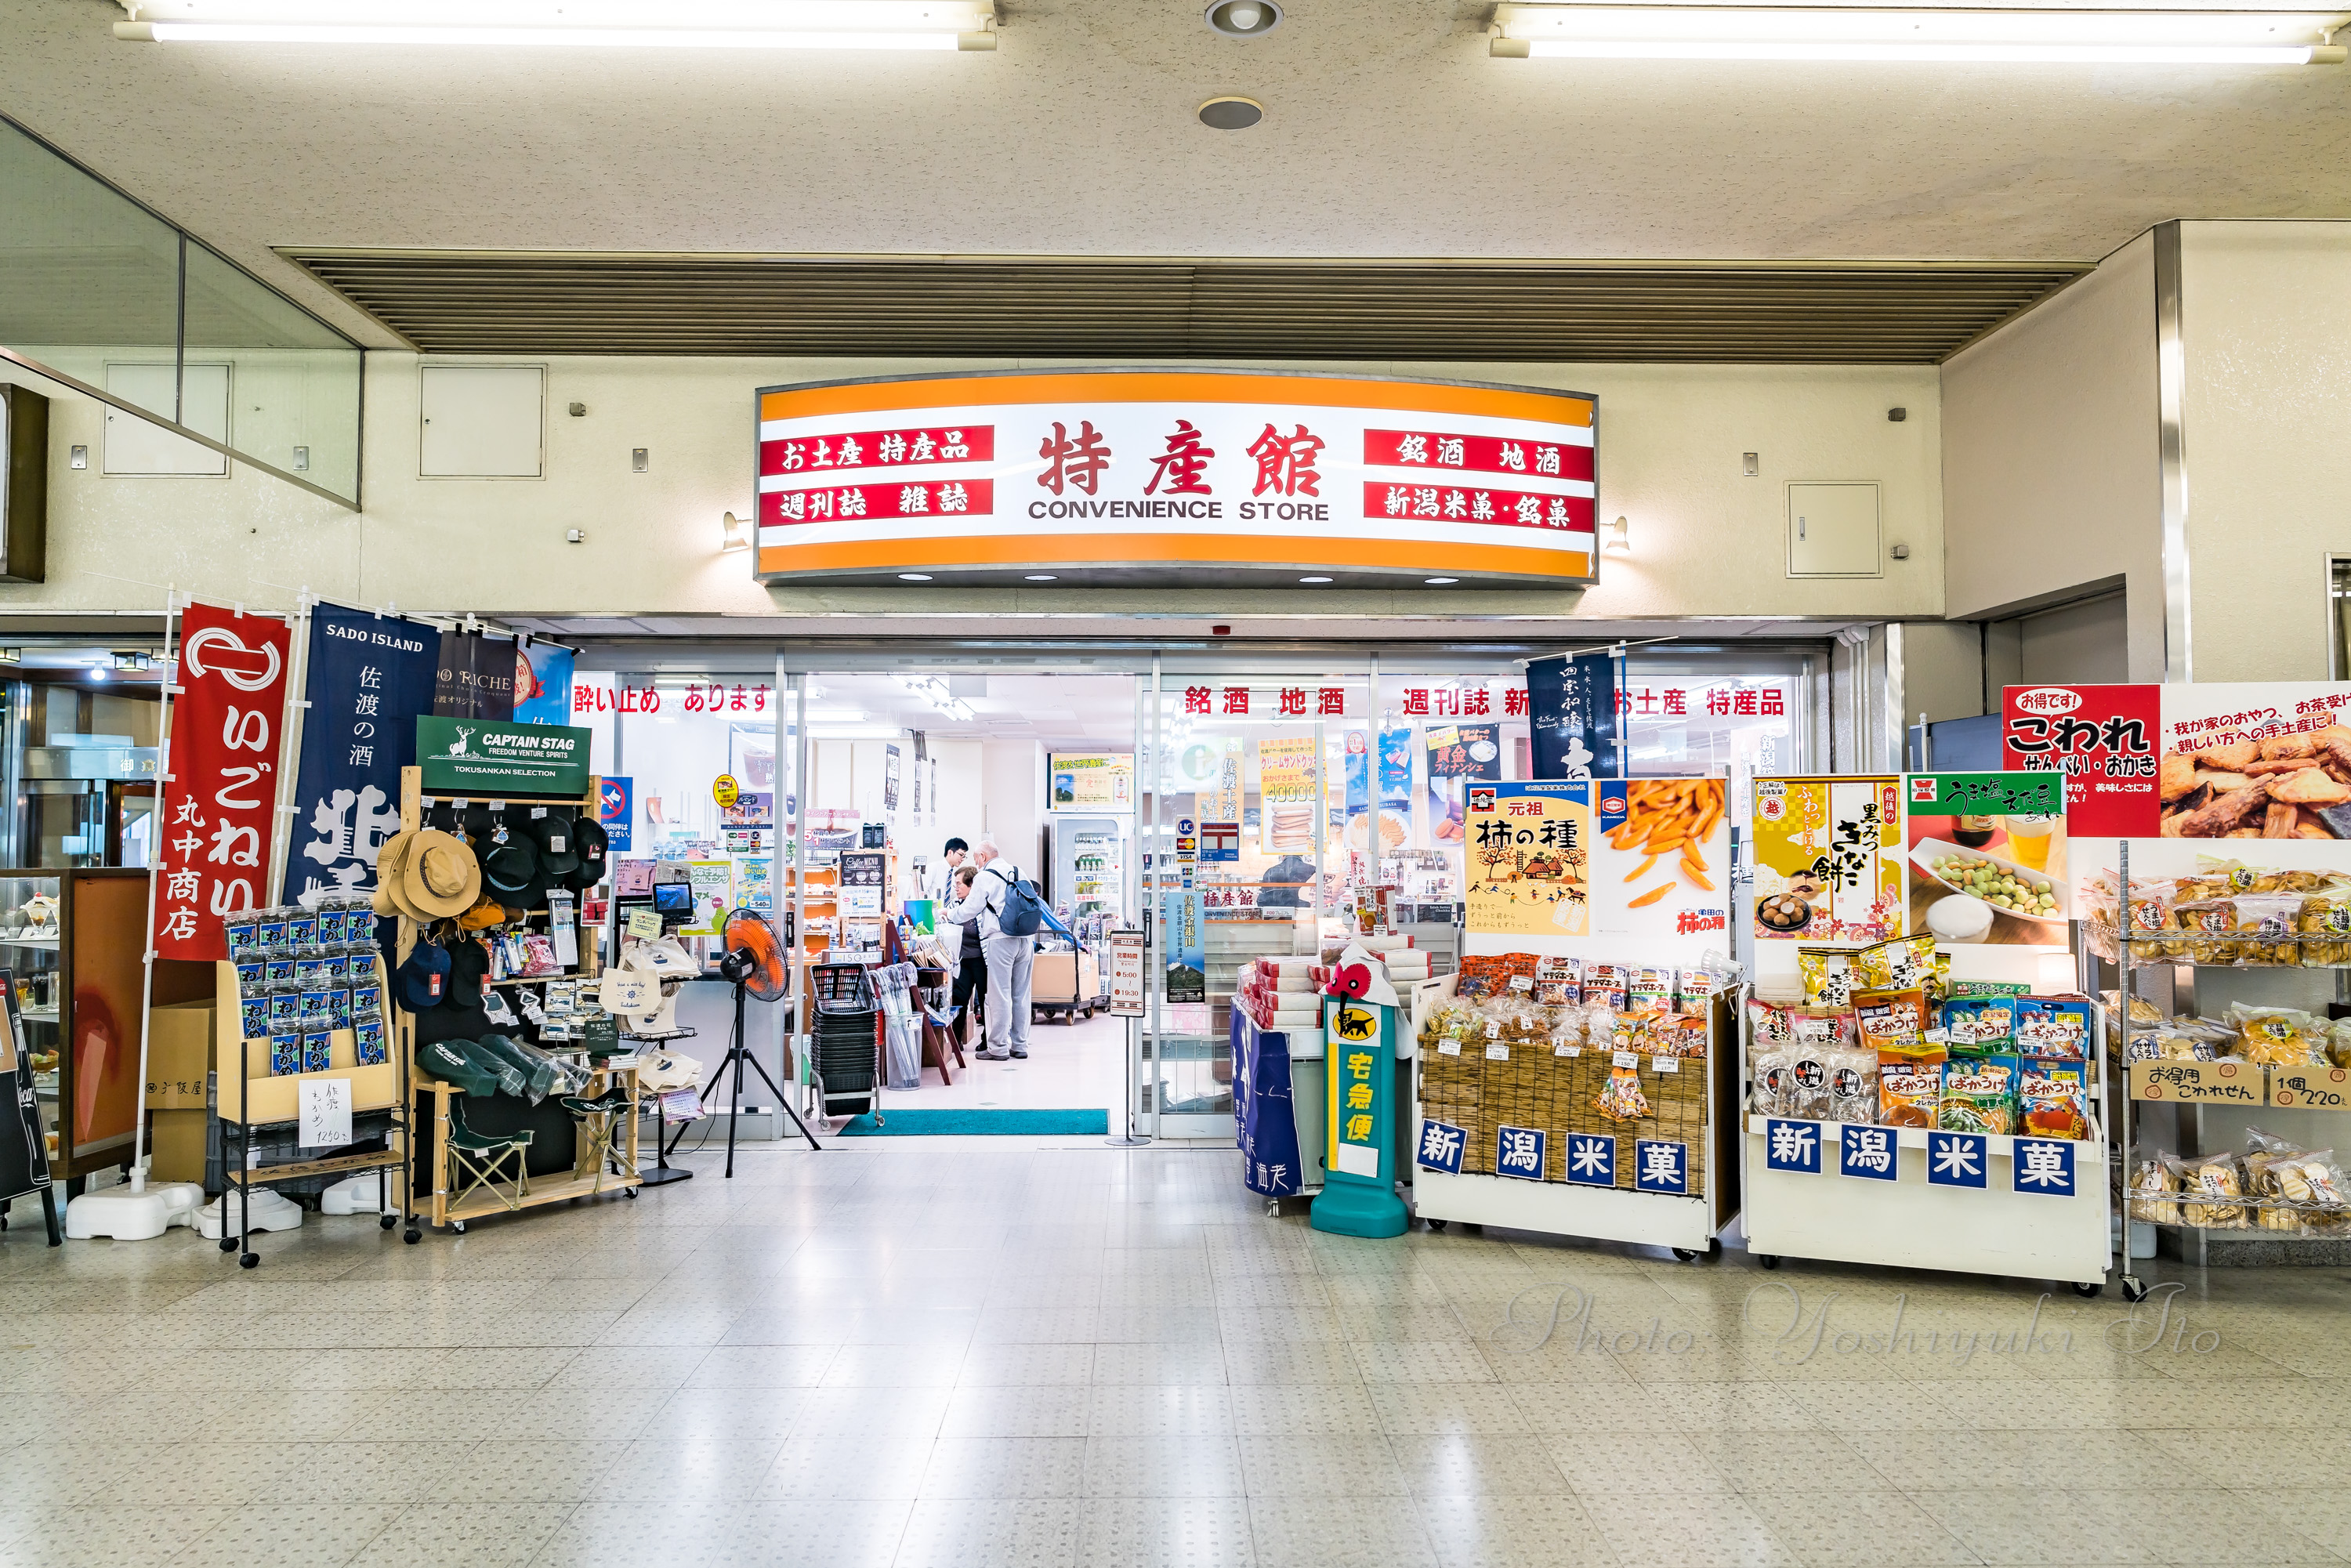 佐渡汽船の新潟港で買える佐渡のお土産 旅館番頭の佐渡観光情報ブログ